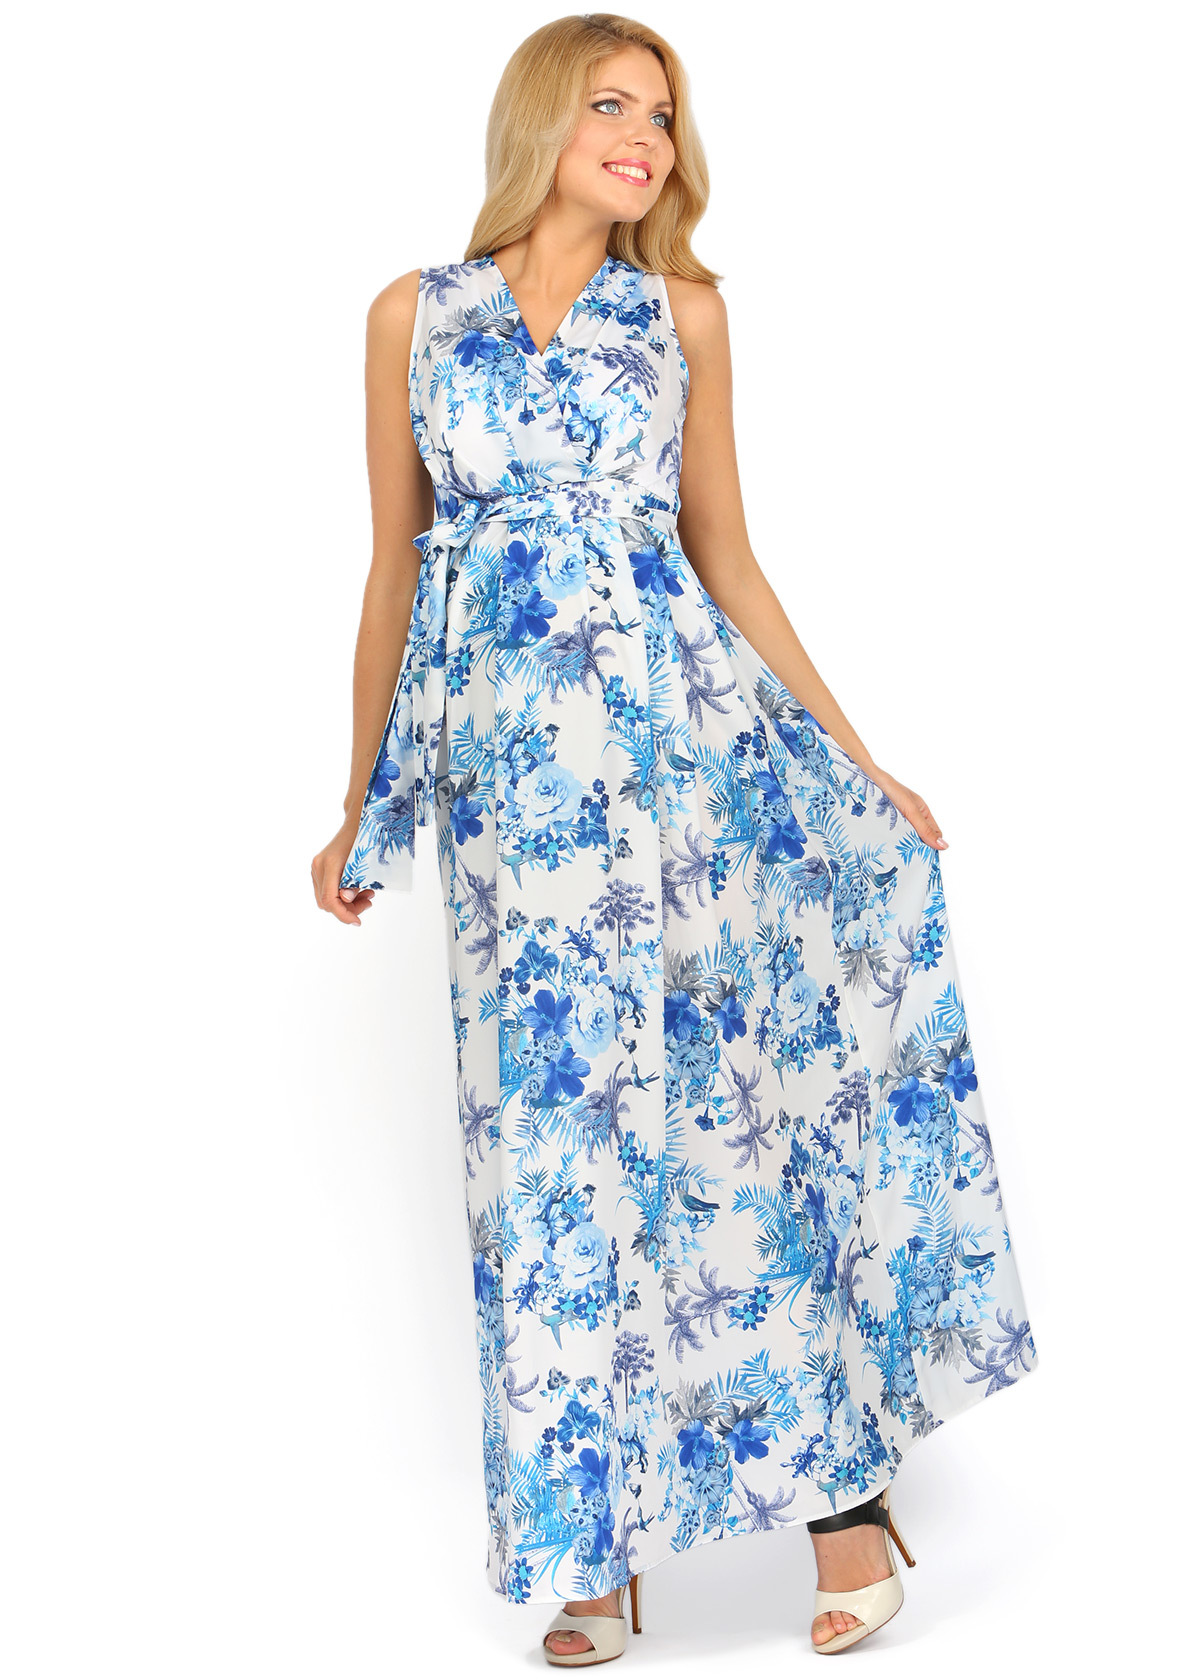 Летние сарафаны купить на озон. Сарафан летний. Летнее струящееся платье. Платье для беременных летнее длинное. Длинный голубой сарафан.